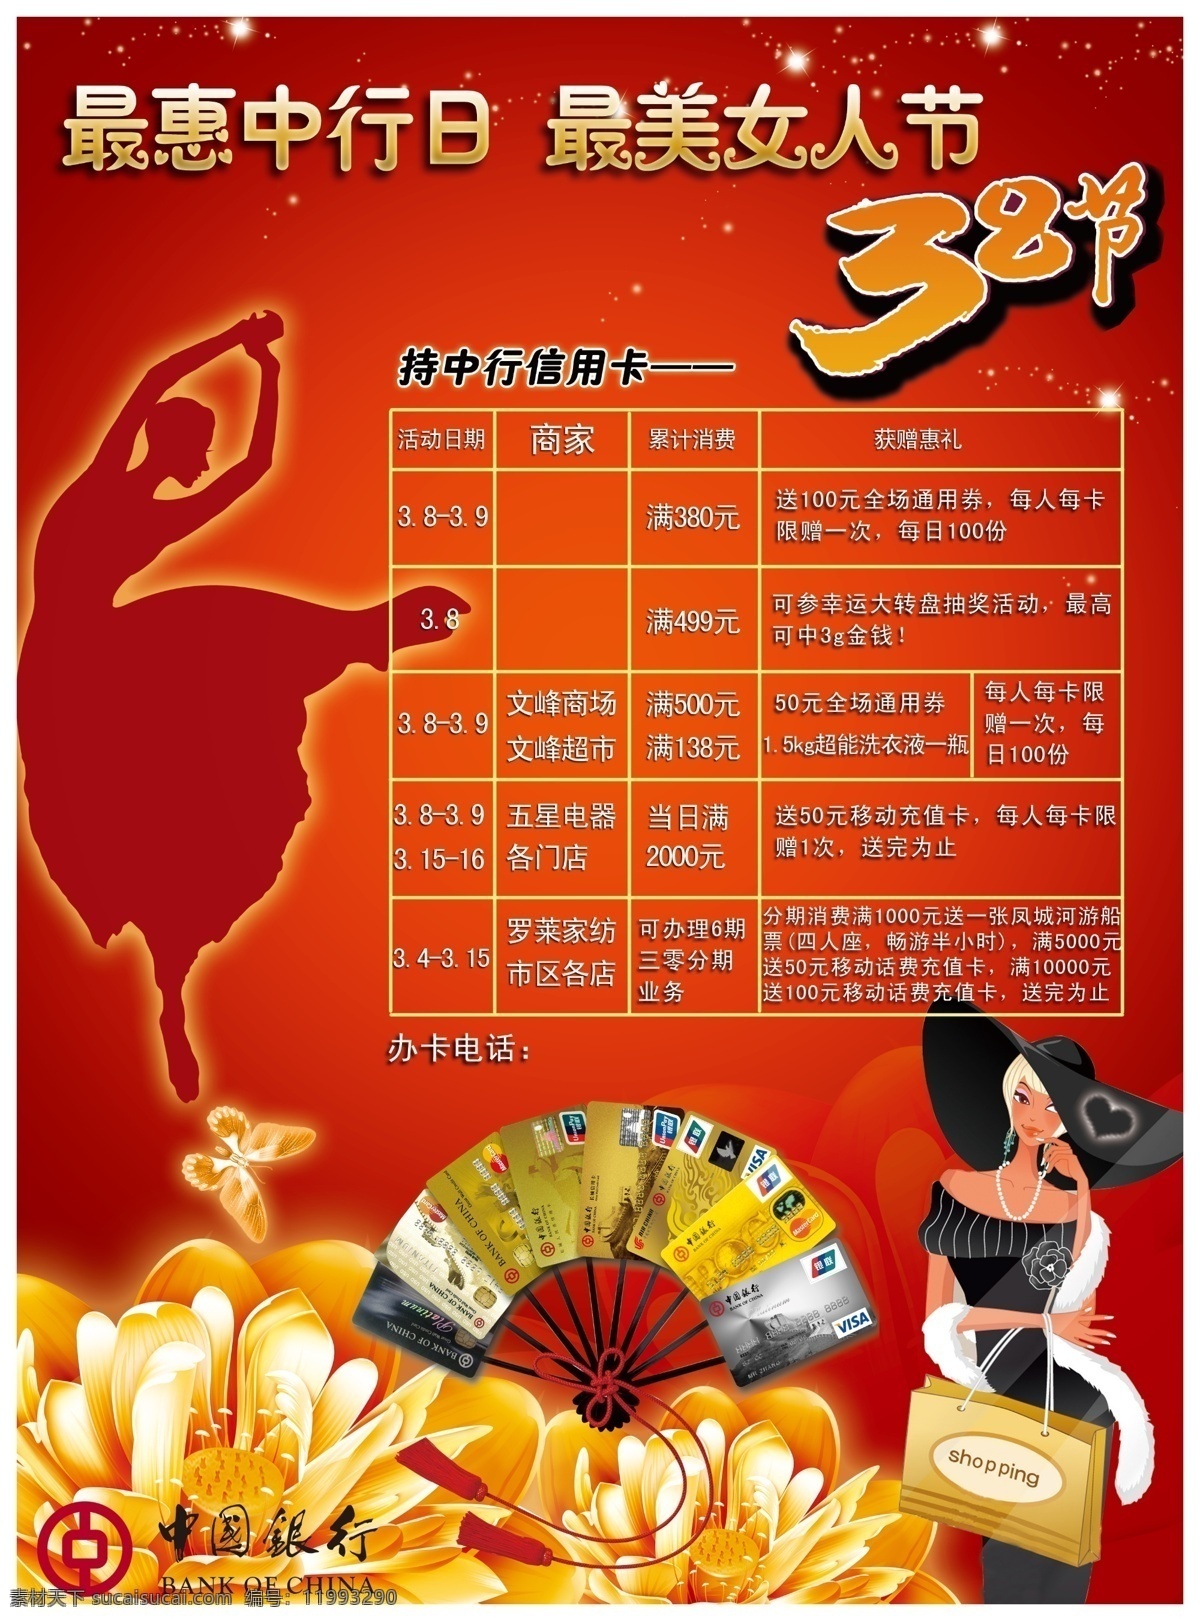 中国银行 三八节 活动 大图 妇女节 银行卡 表格 舞女剪影 海报 商务金融 商业插画